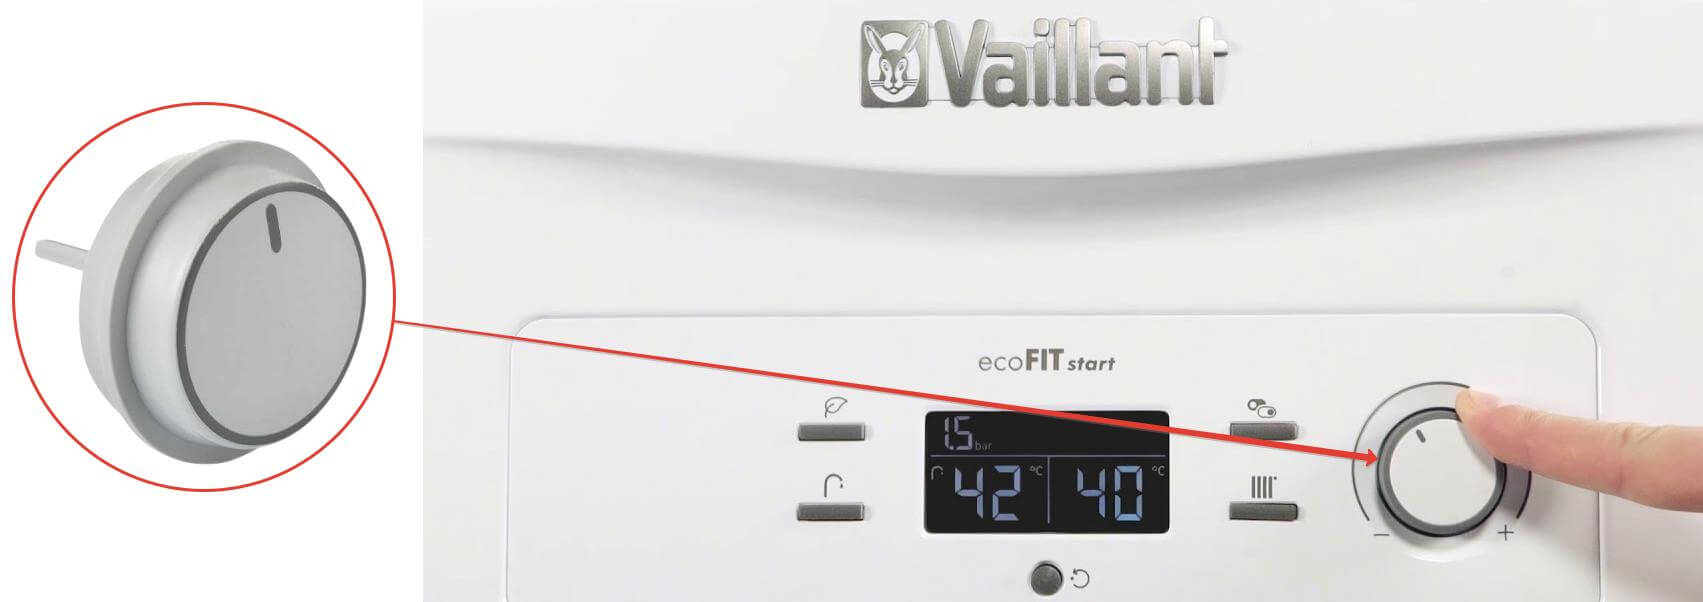 Vaillant Turbotech Kombi Ayar Düğmesi